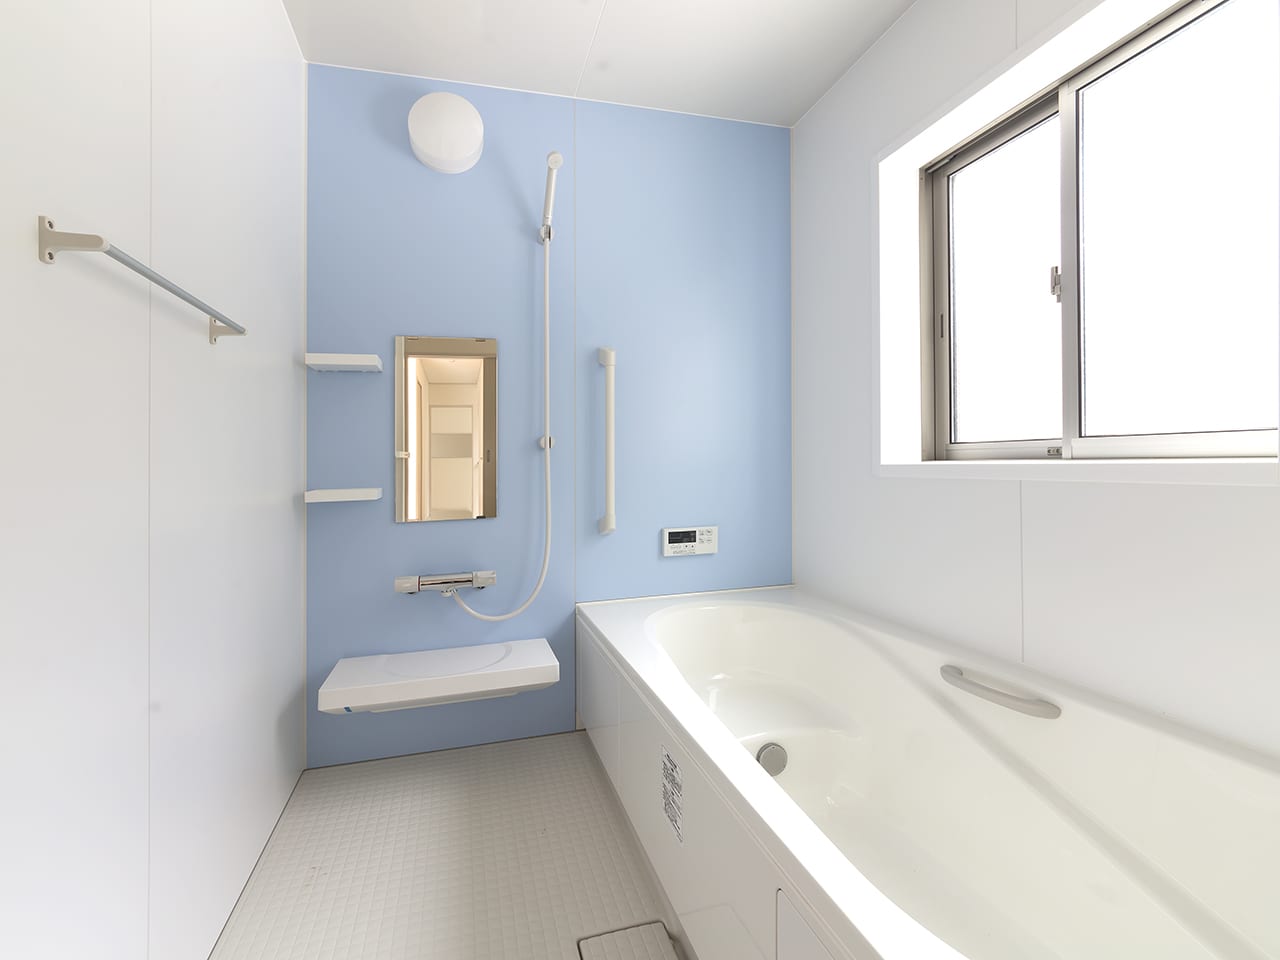 浴槽・浴室水周り専用特殊塗装・リフォーム参考価格のイメージ画像、綺麗な浴室の写真